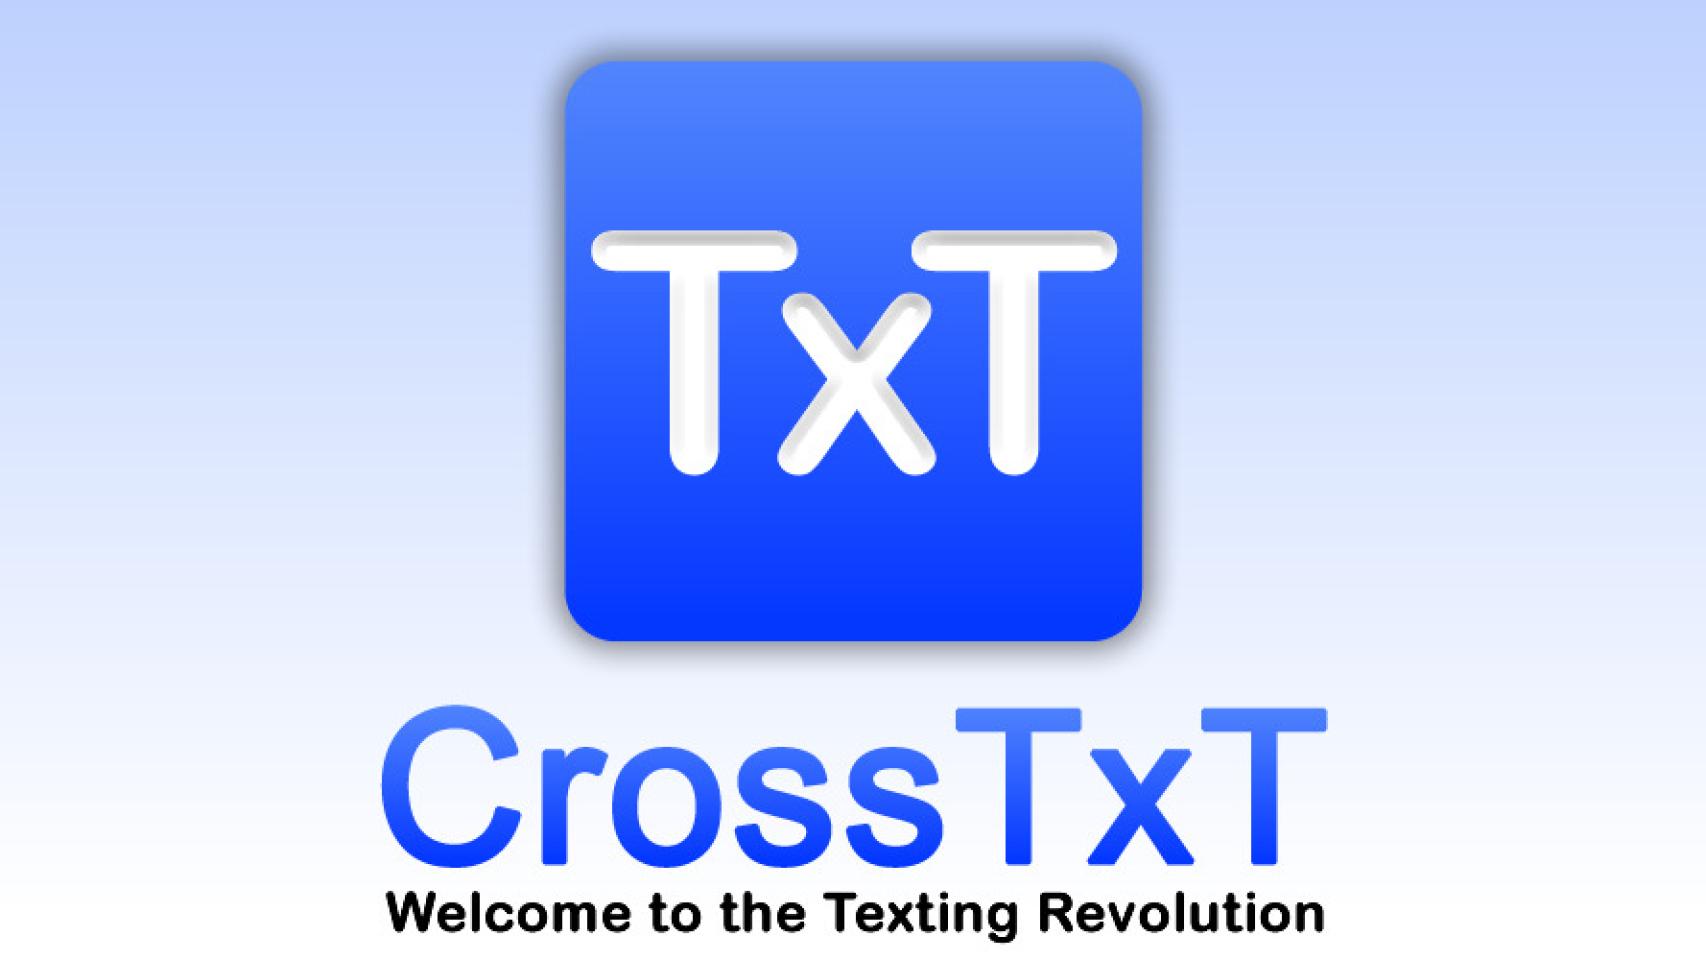 Tu ordenador y tu Android conectados para tus SMS con CrossTxT